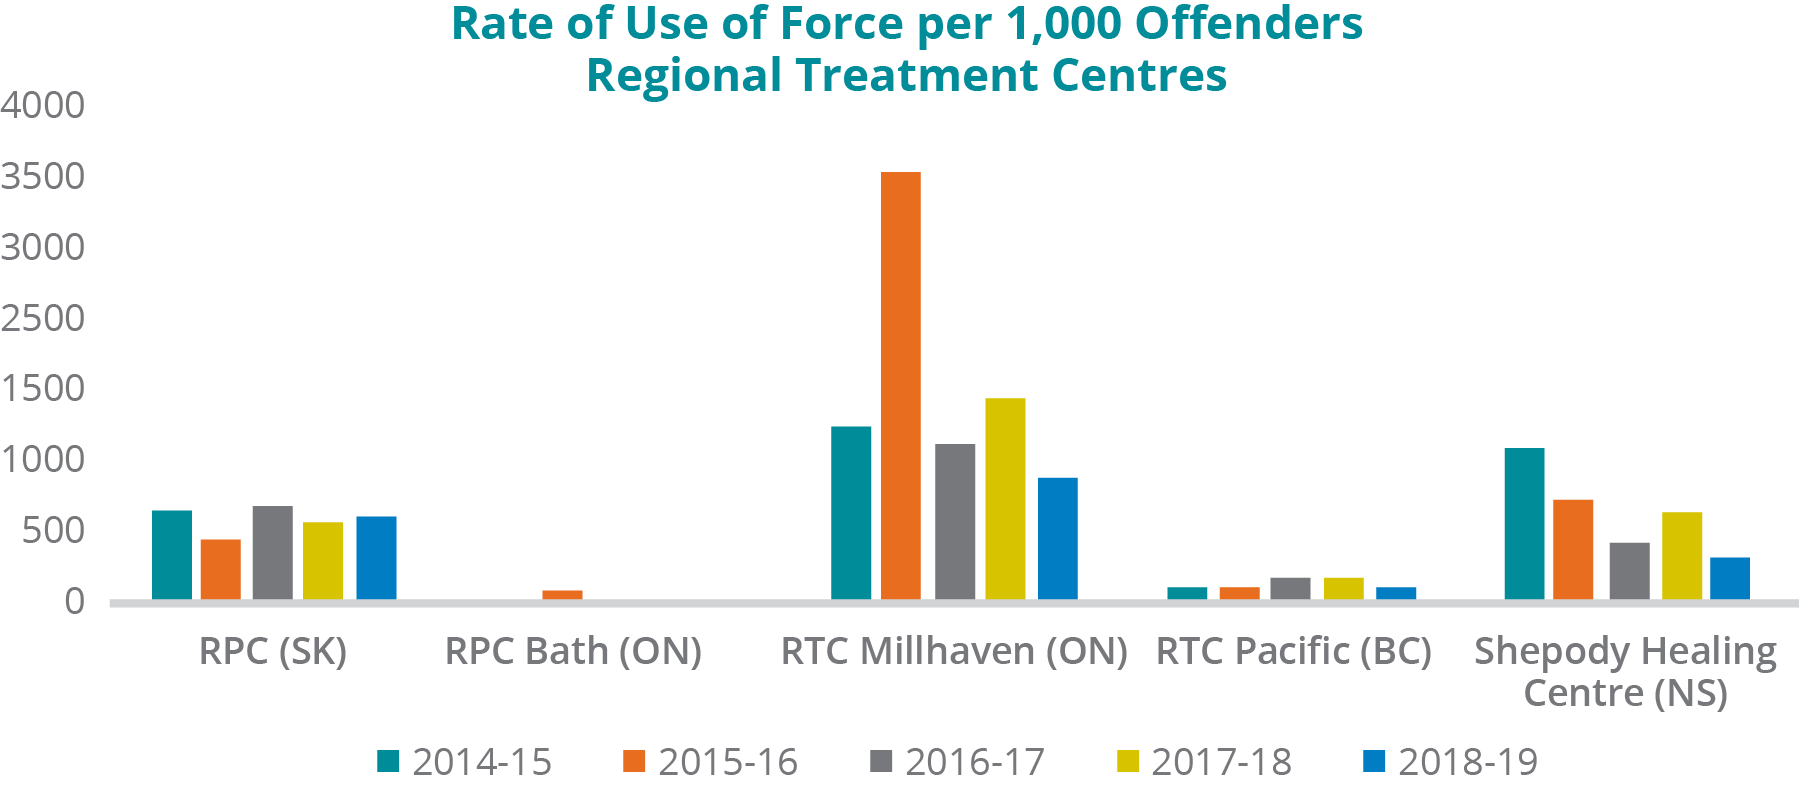 Graphique illustrant le taux de recours à la force par 1 000 délinquants dans les centres régionaux de traitement : -	Centre psychiatrique régional — Saskatoon : En 2014 2015, il y a eu 765 incidents de recours à la force par 1 000 délinquants; en 2015 2016, 534 par 1 000 délinquants; en 2016 2017, 810 par 1 000 délinquants; en 2017 2018, 682 par 1 000 délinquants; en 2018 2019, 734 par 1 000 délinquants. -	Centre régional de traitement — Établissement de Bath : En 2014 2015, il n'y a eu aucun cas de recours à la force par 1 000 délinquants; en 2015 2016, 80 par 1 000 délinquants; en 2016 2017, 29 par 1 000 délinquants; en 2017 2018, 0 par 1 000 délinquants; en 2018 2019, 29 par 1 000 délinquants. -	Centre régional de traitement — Établissement de Millhaven : En 2014 2015, il y a eu 1 435 incidents de recours à la force par 1 000 délinquants; en 2015 2016, 3 500 par 1 000 délinquants; en 2016 2017, 1 296 par 1 000 délinquants; en 2017 2018, 1 667 par 1 000 délinquants; en 2018 2019, 1 011 par 1 000 délinquants. -	Centre régional de traitement — Pacifique : En 2014 2015, il y a eu 106 incidents de recours à la force par 1 000 délinquants; en 2015 2016, 101 par 1 000 délinquants; en 2016 2017, 156 par 1 000 délinquants; en 2017 2018, 170 par 1 000 délinquants; en 2018 2019, 92 par 1 000 délinquants. -	Centre de guérison Shepody — Nouvelle Écosse : En 2014 2015, il y a eu 1 235 incidents de recours à la force par 1 000 délinquants; en 2015 2016, 833 par 1 000 délinquants; en 2016 2017, 444 par 1 000 délinquants; en 2017 2018, 694 par 1 000 délinquants; en 2018 2019, 350 par 1 000 délinquants.